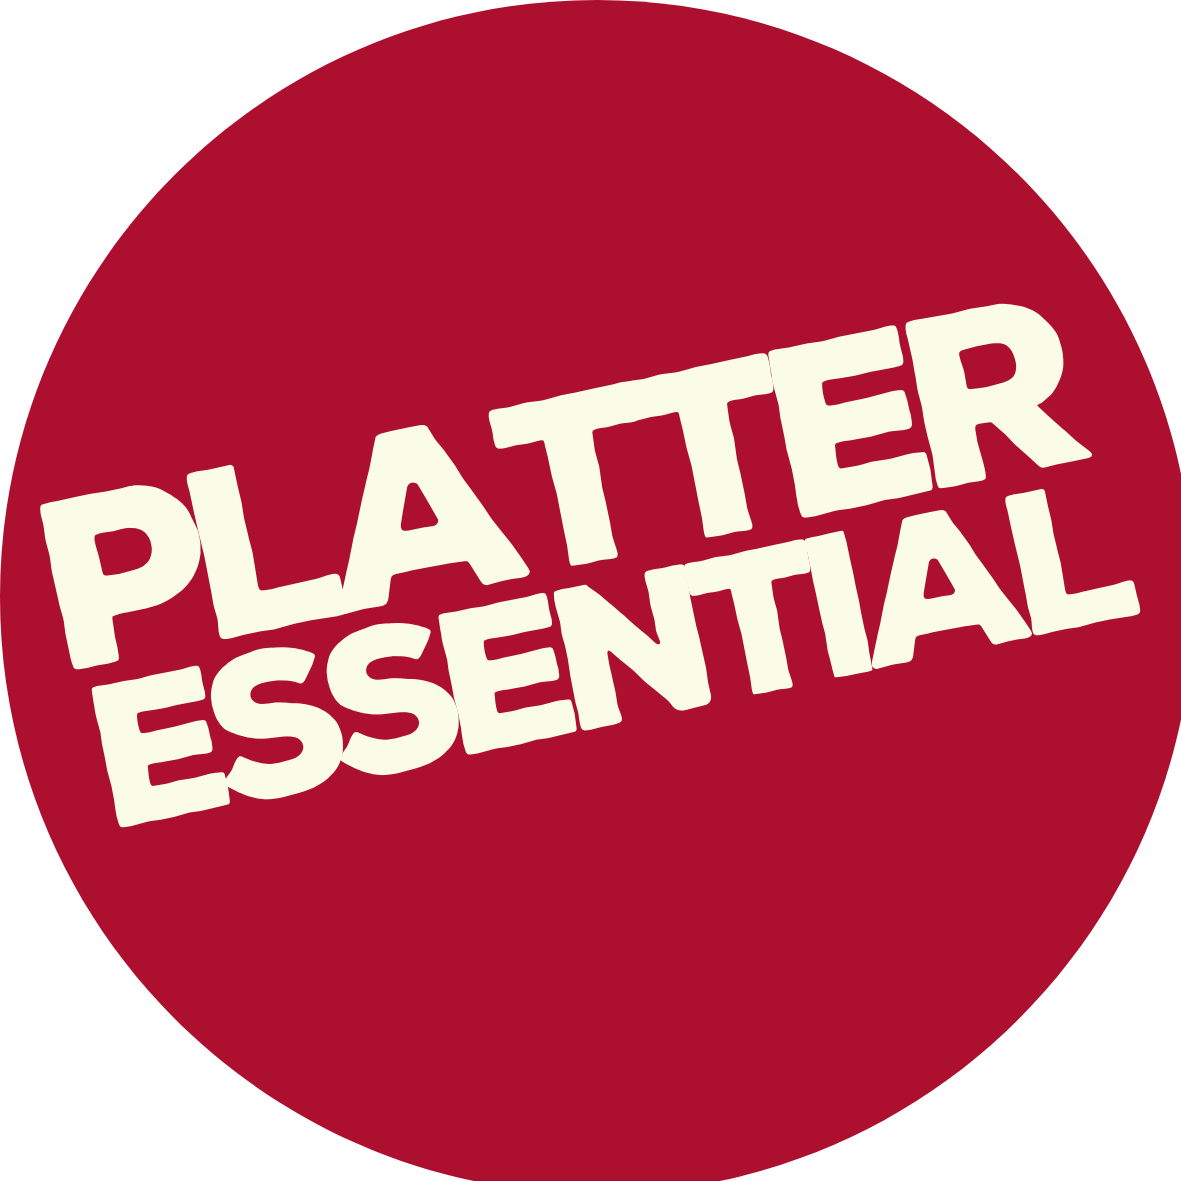 Platter Essentials